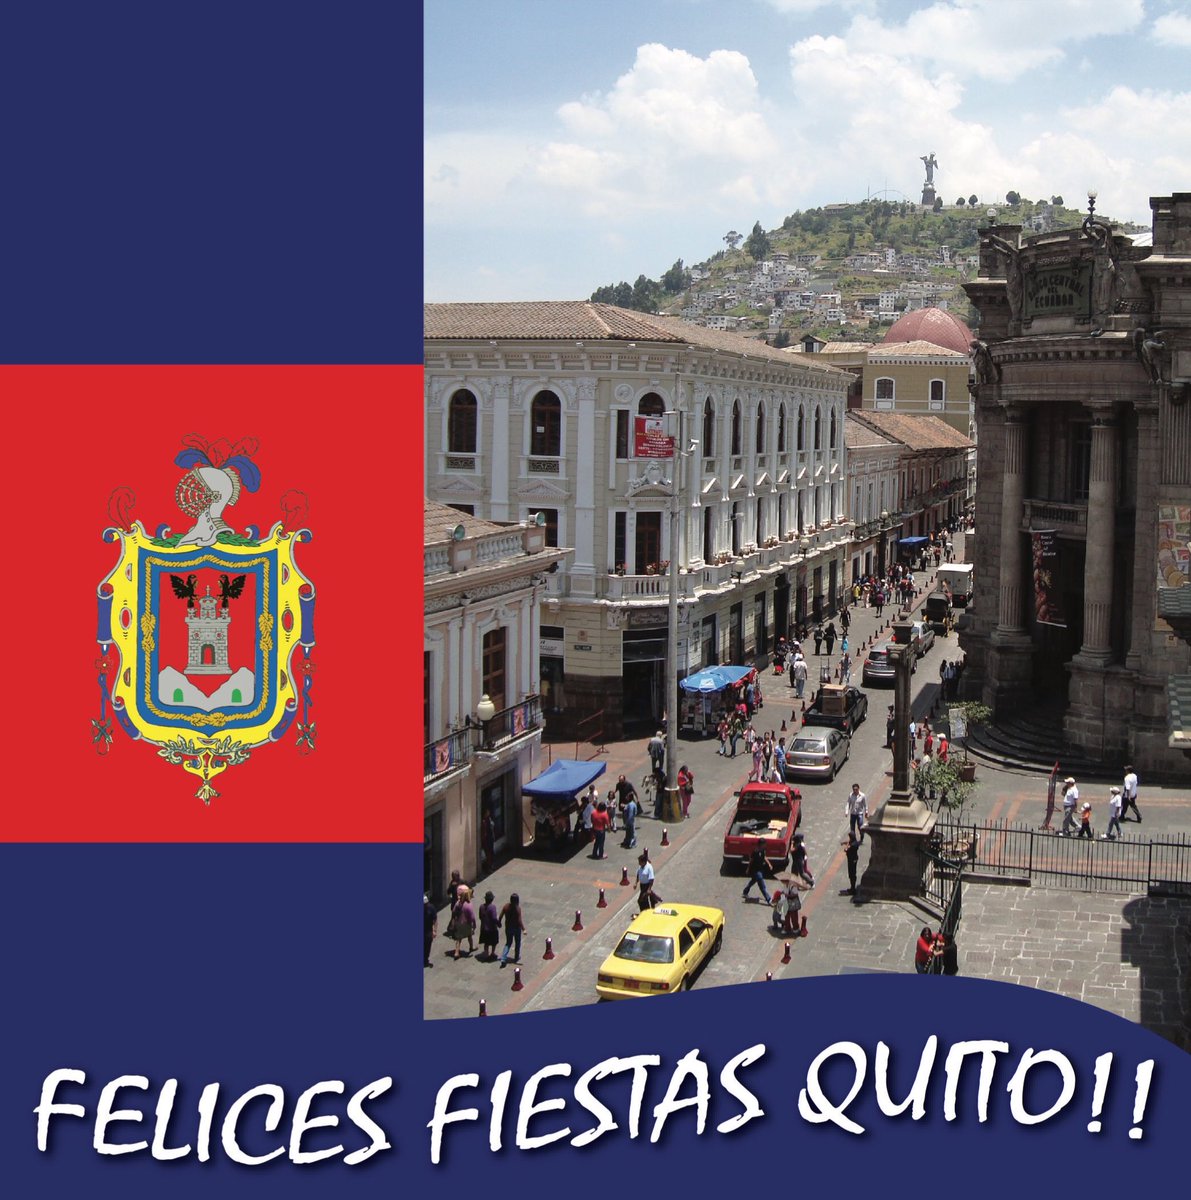 Mug It Twitterissa A Nuestros Amigos De Quito Felices Fiestas